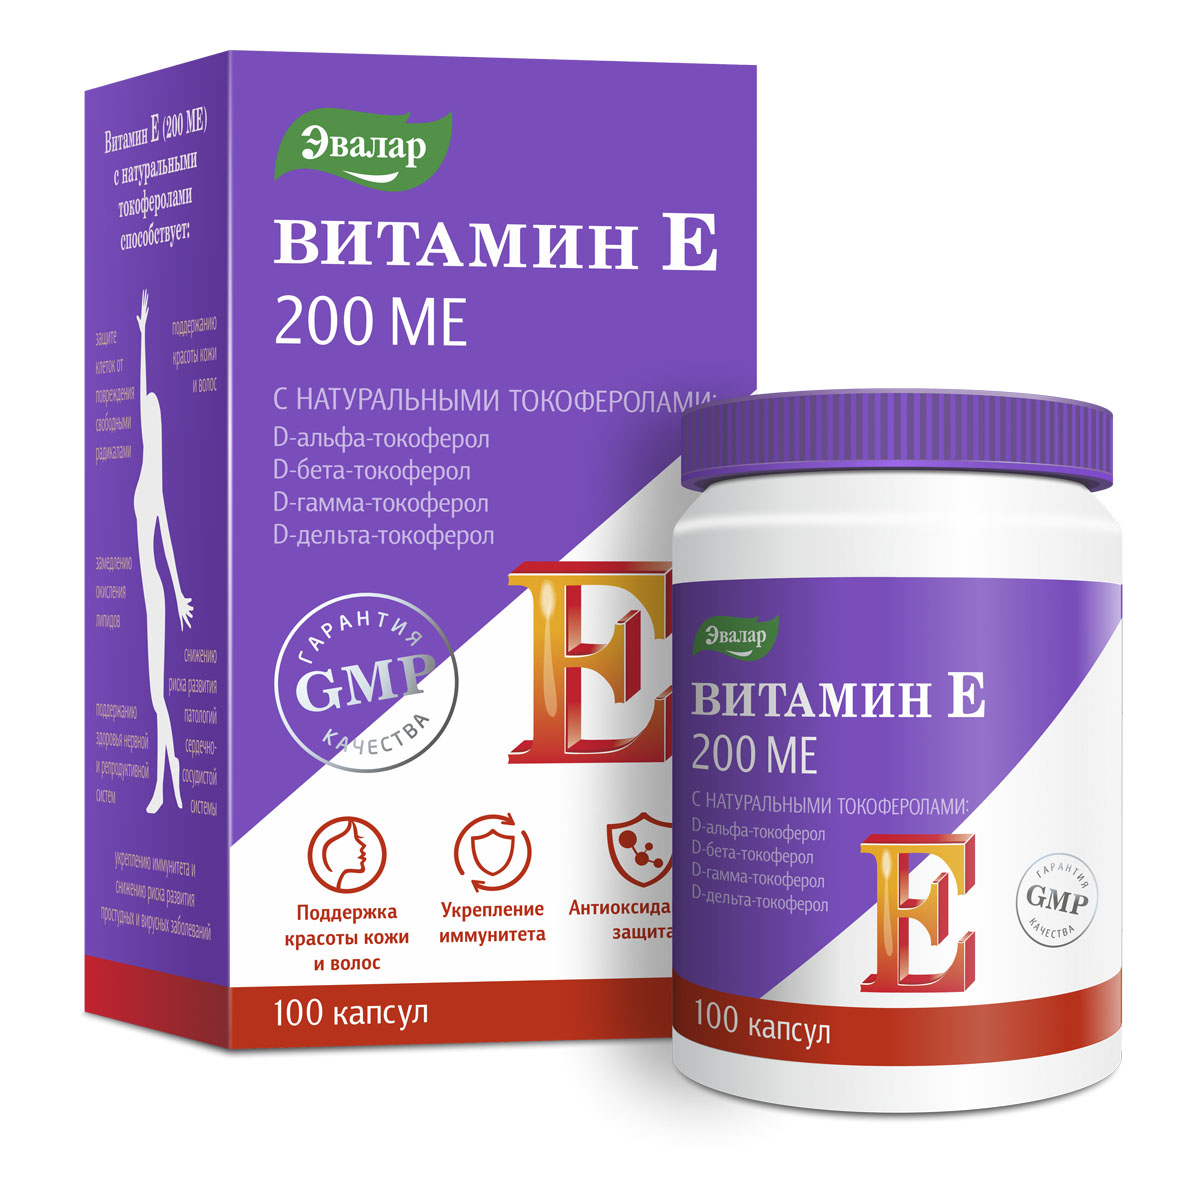 Витамин Е, 200 МЕ, с натуральными токоферолами, мягкие желатиновые капсулы, 100 шт по 0,3 г